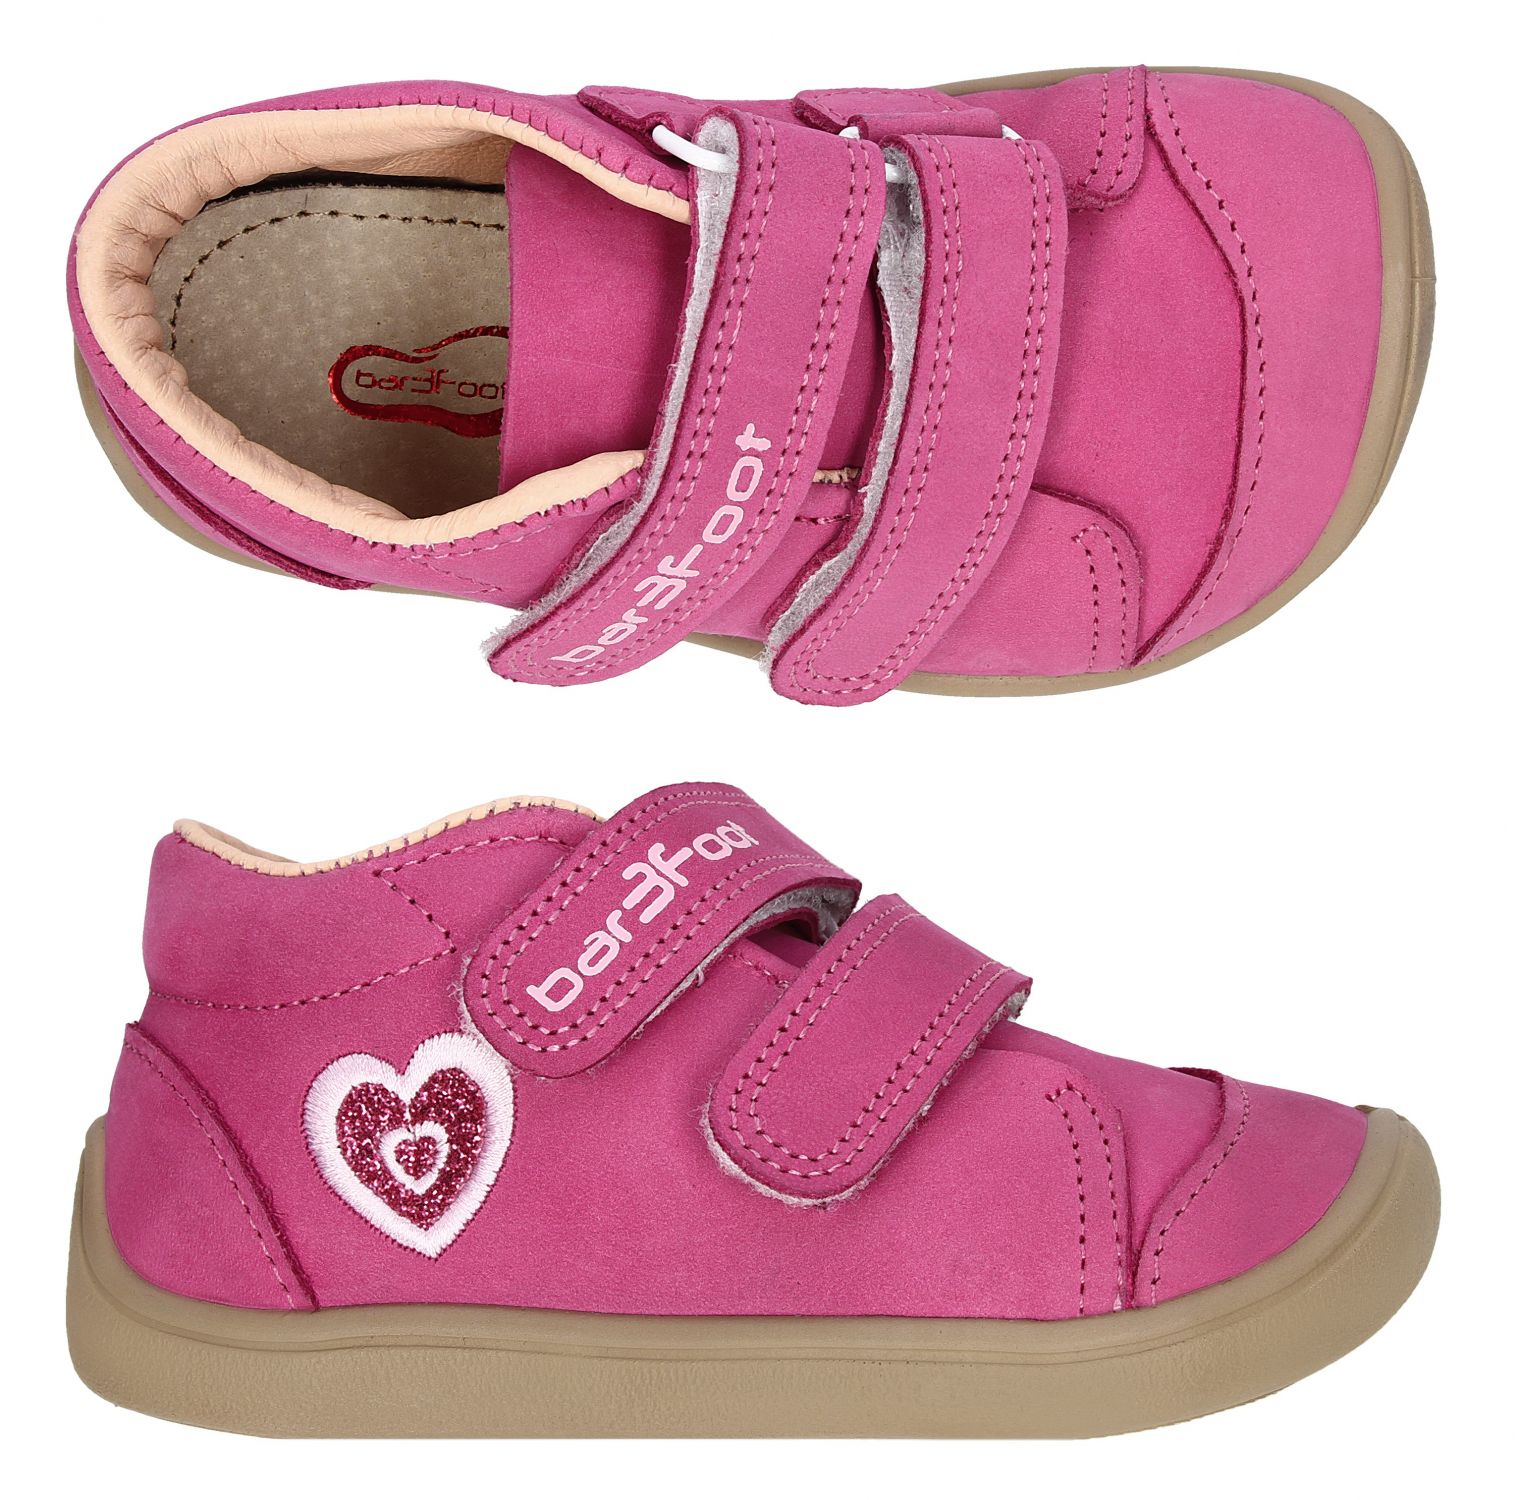 chaussures 3F barefoot elf step rose déco coeur 2BE38-3 sur la boutique Liberty pieds